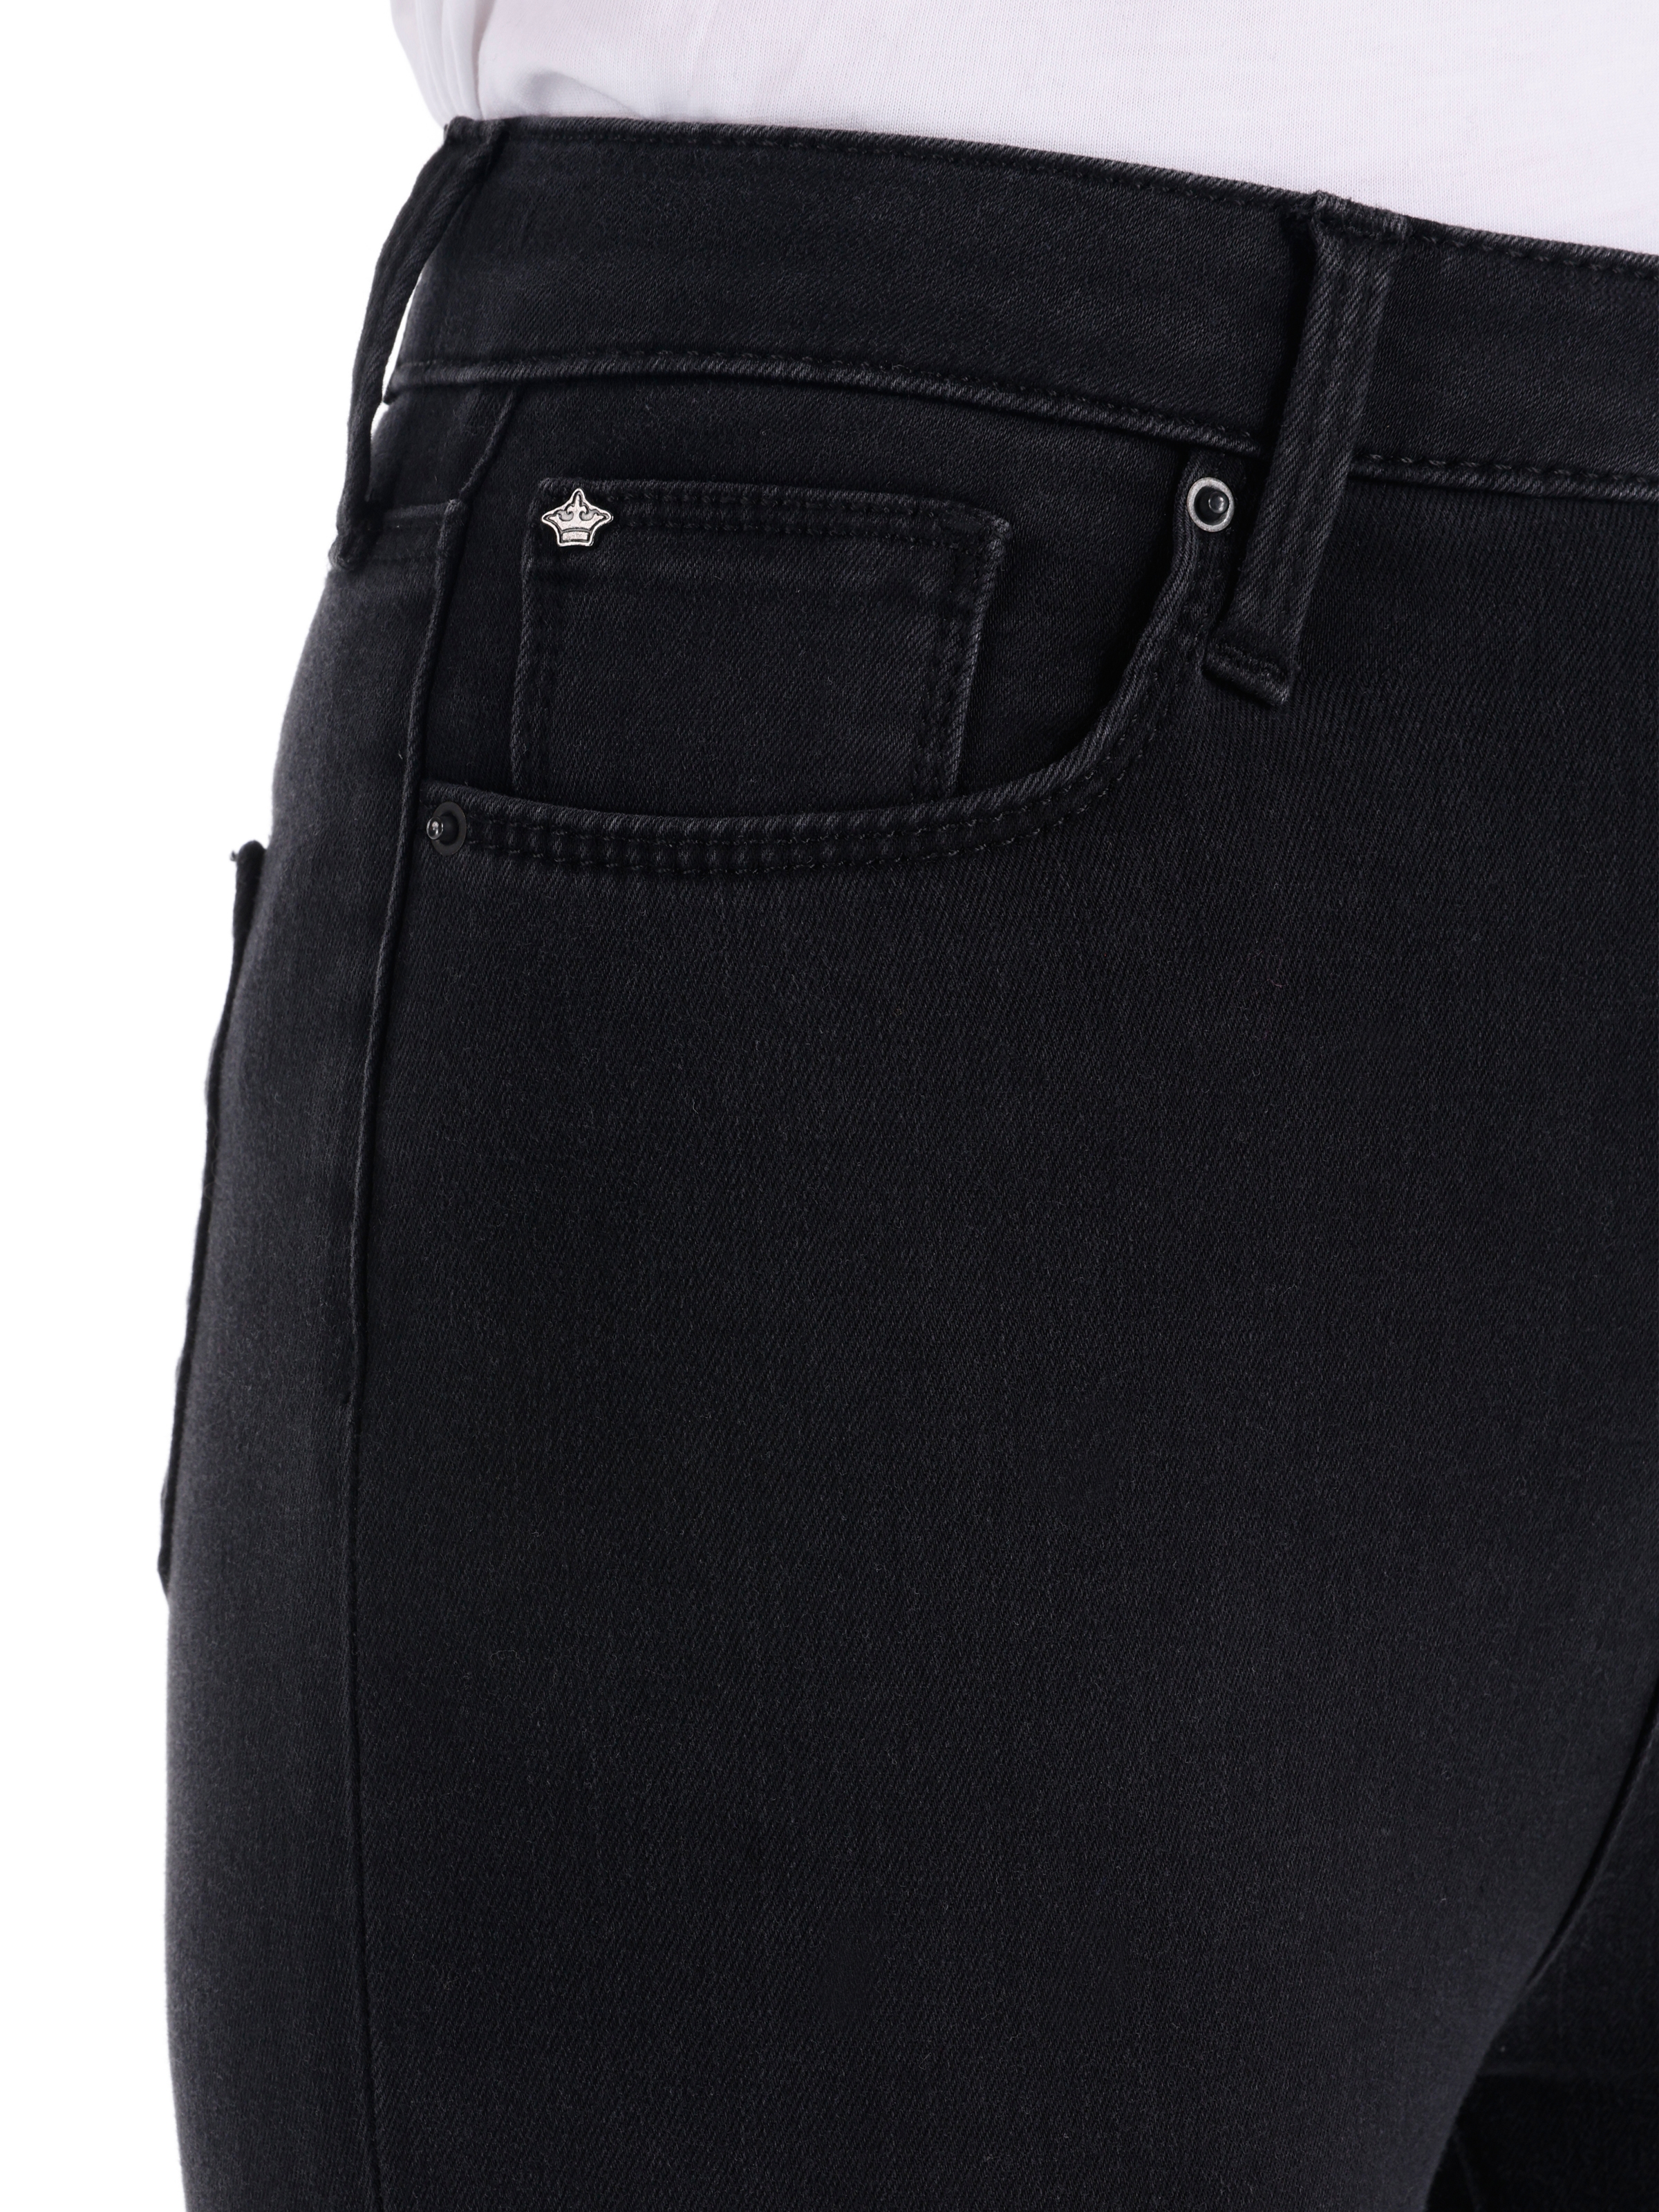 Afficher les détails de Pantalon Jean Noir Pour Femme